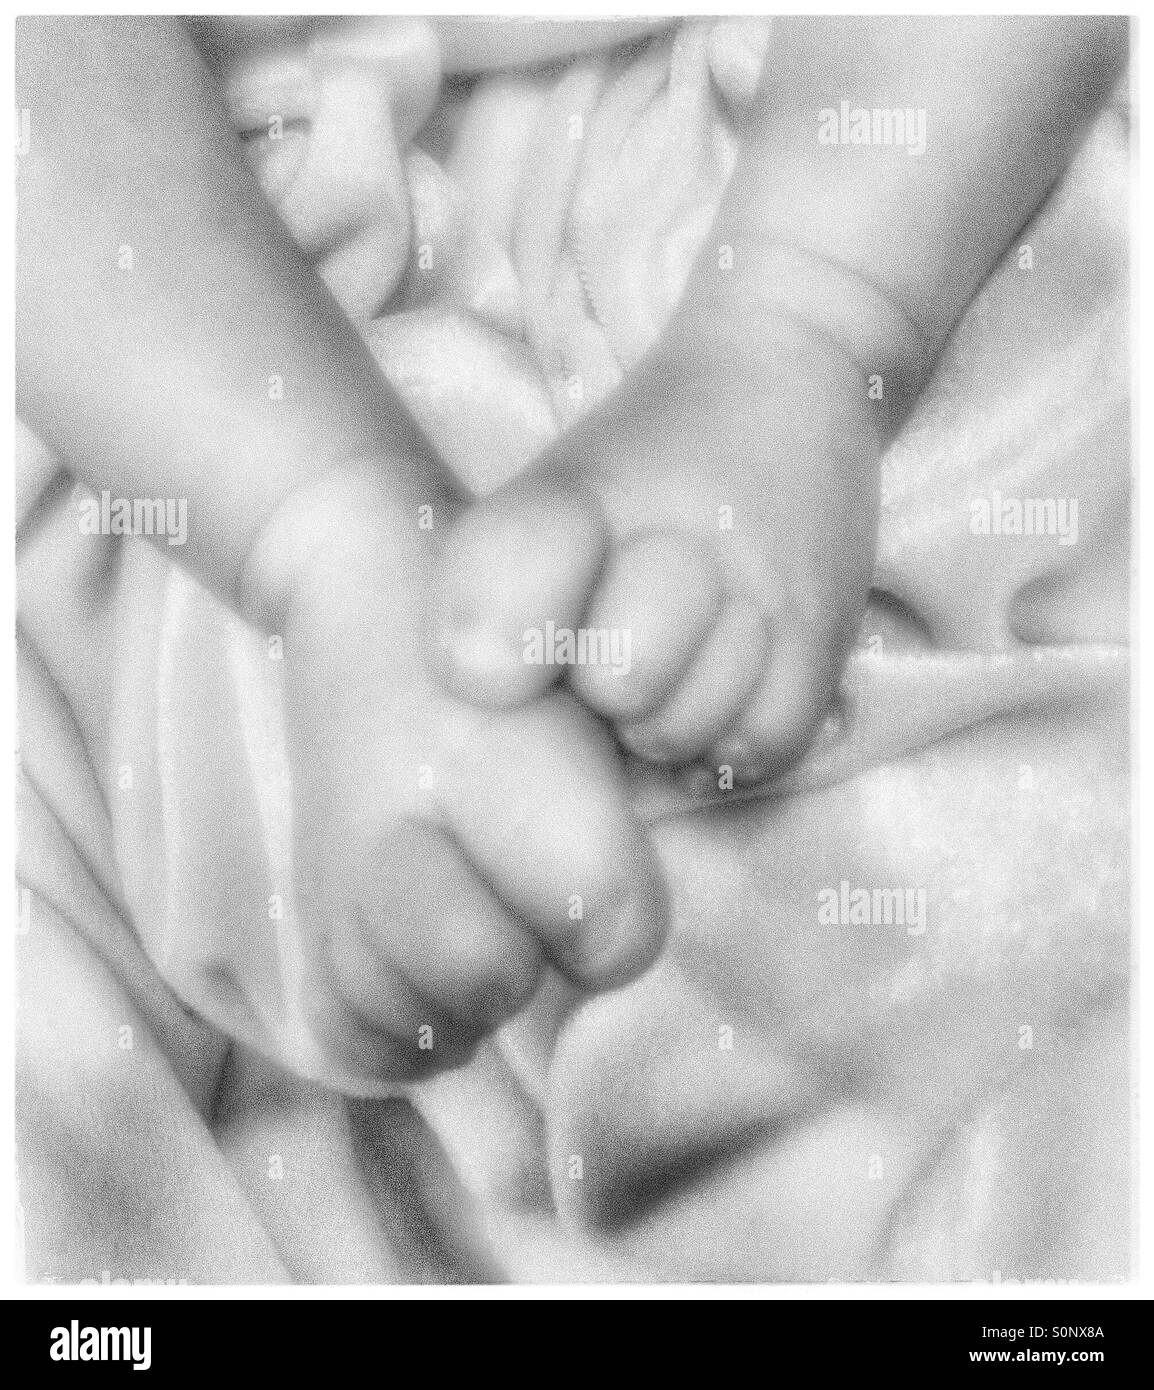 Newborns feet Stock Photo